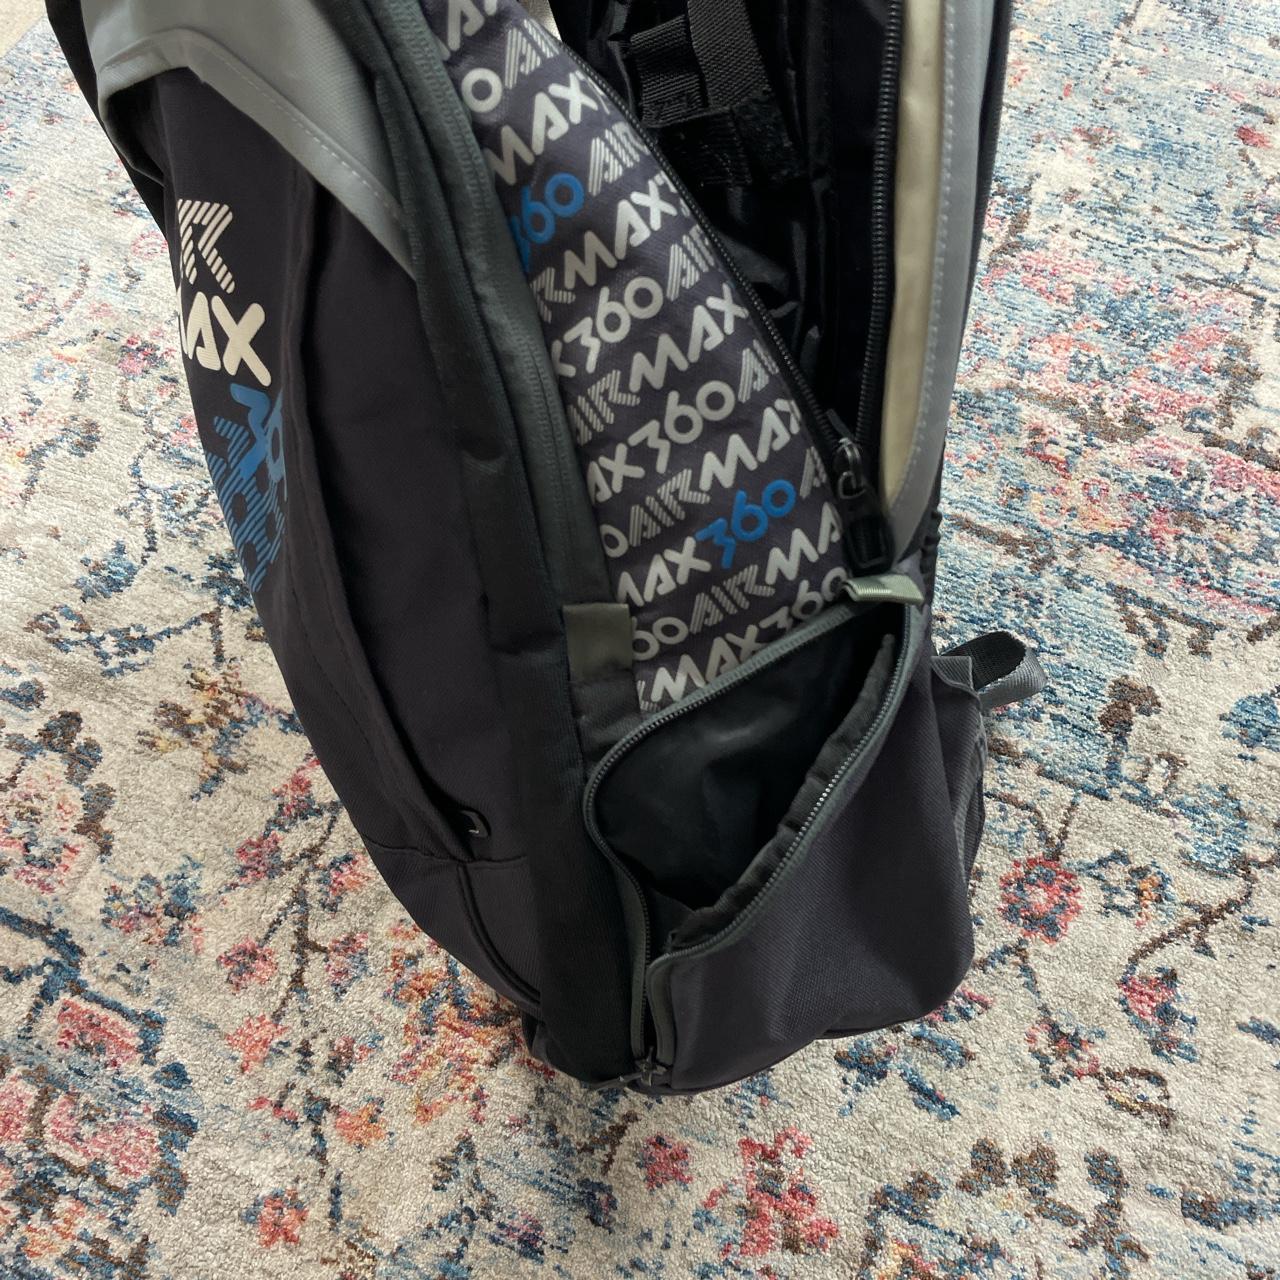 Vintage Nike Air Max Backpack